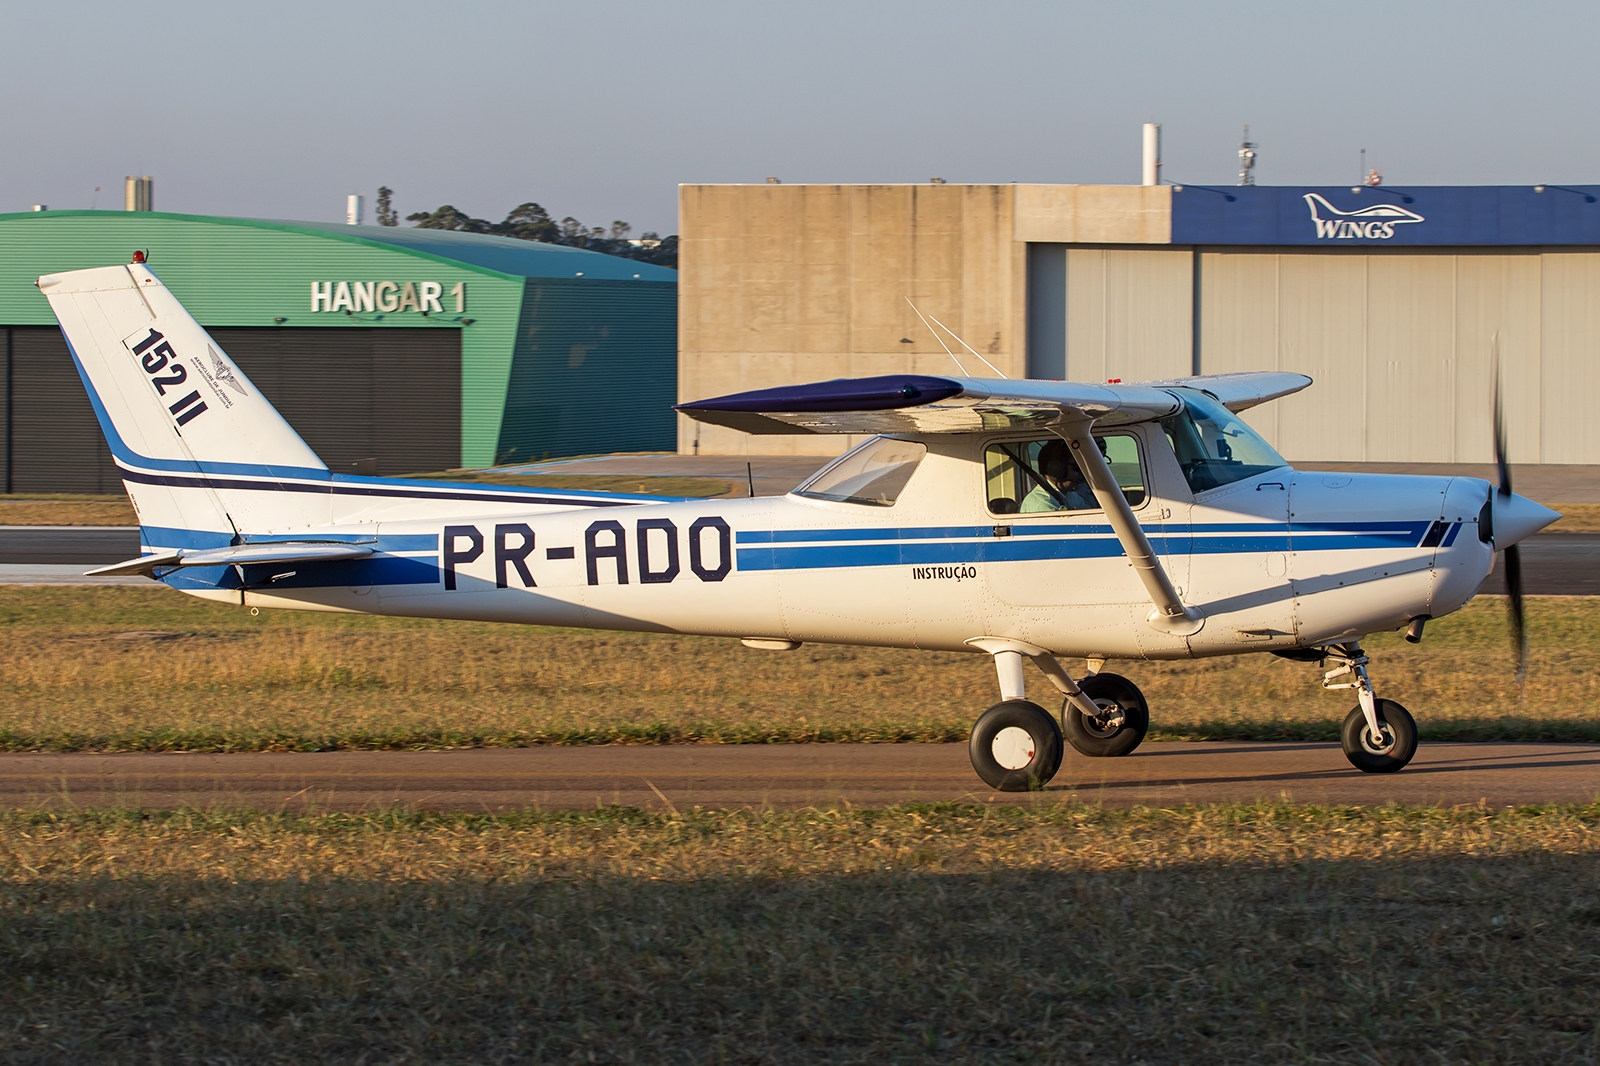 PR-ADO - Cessna 152